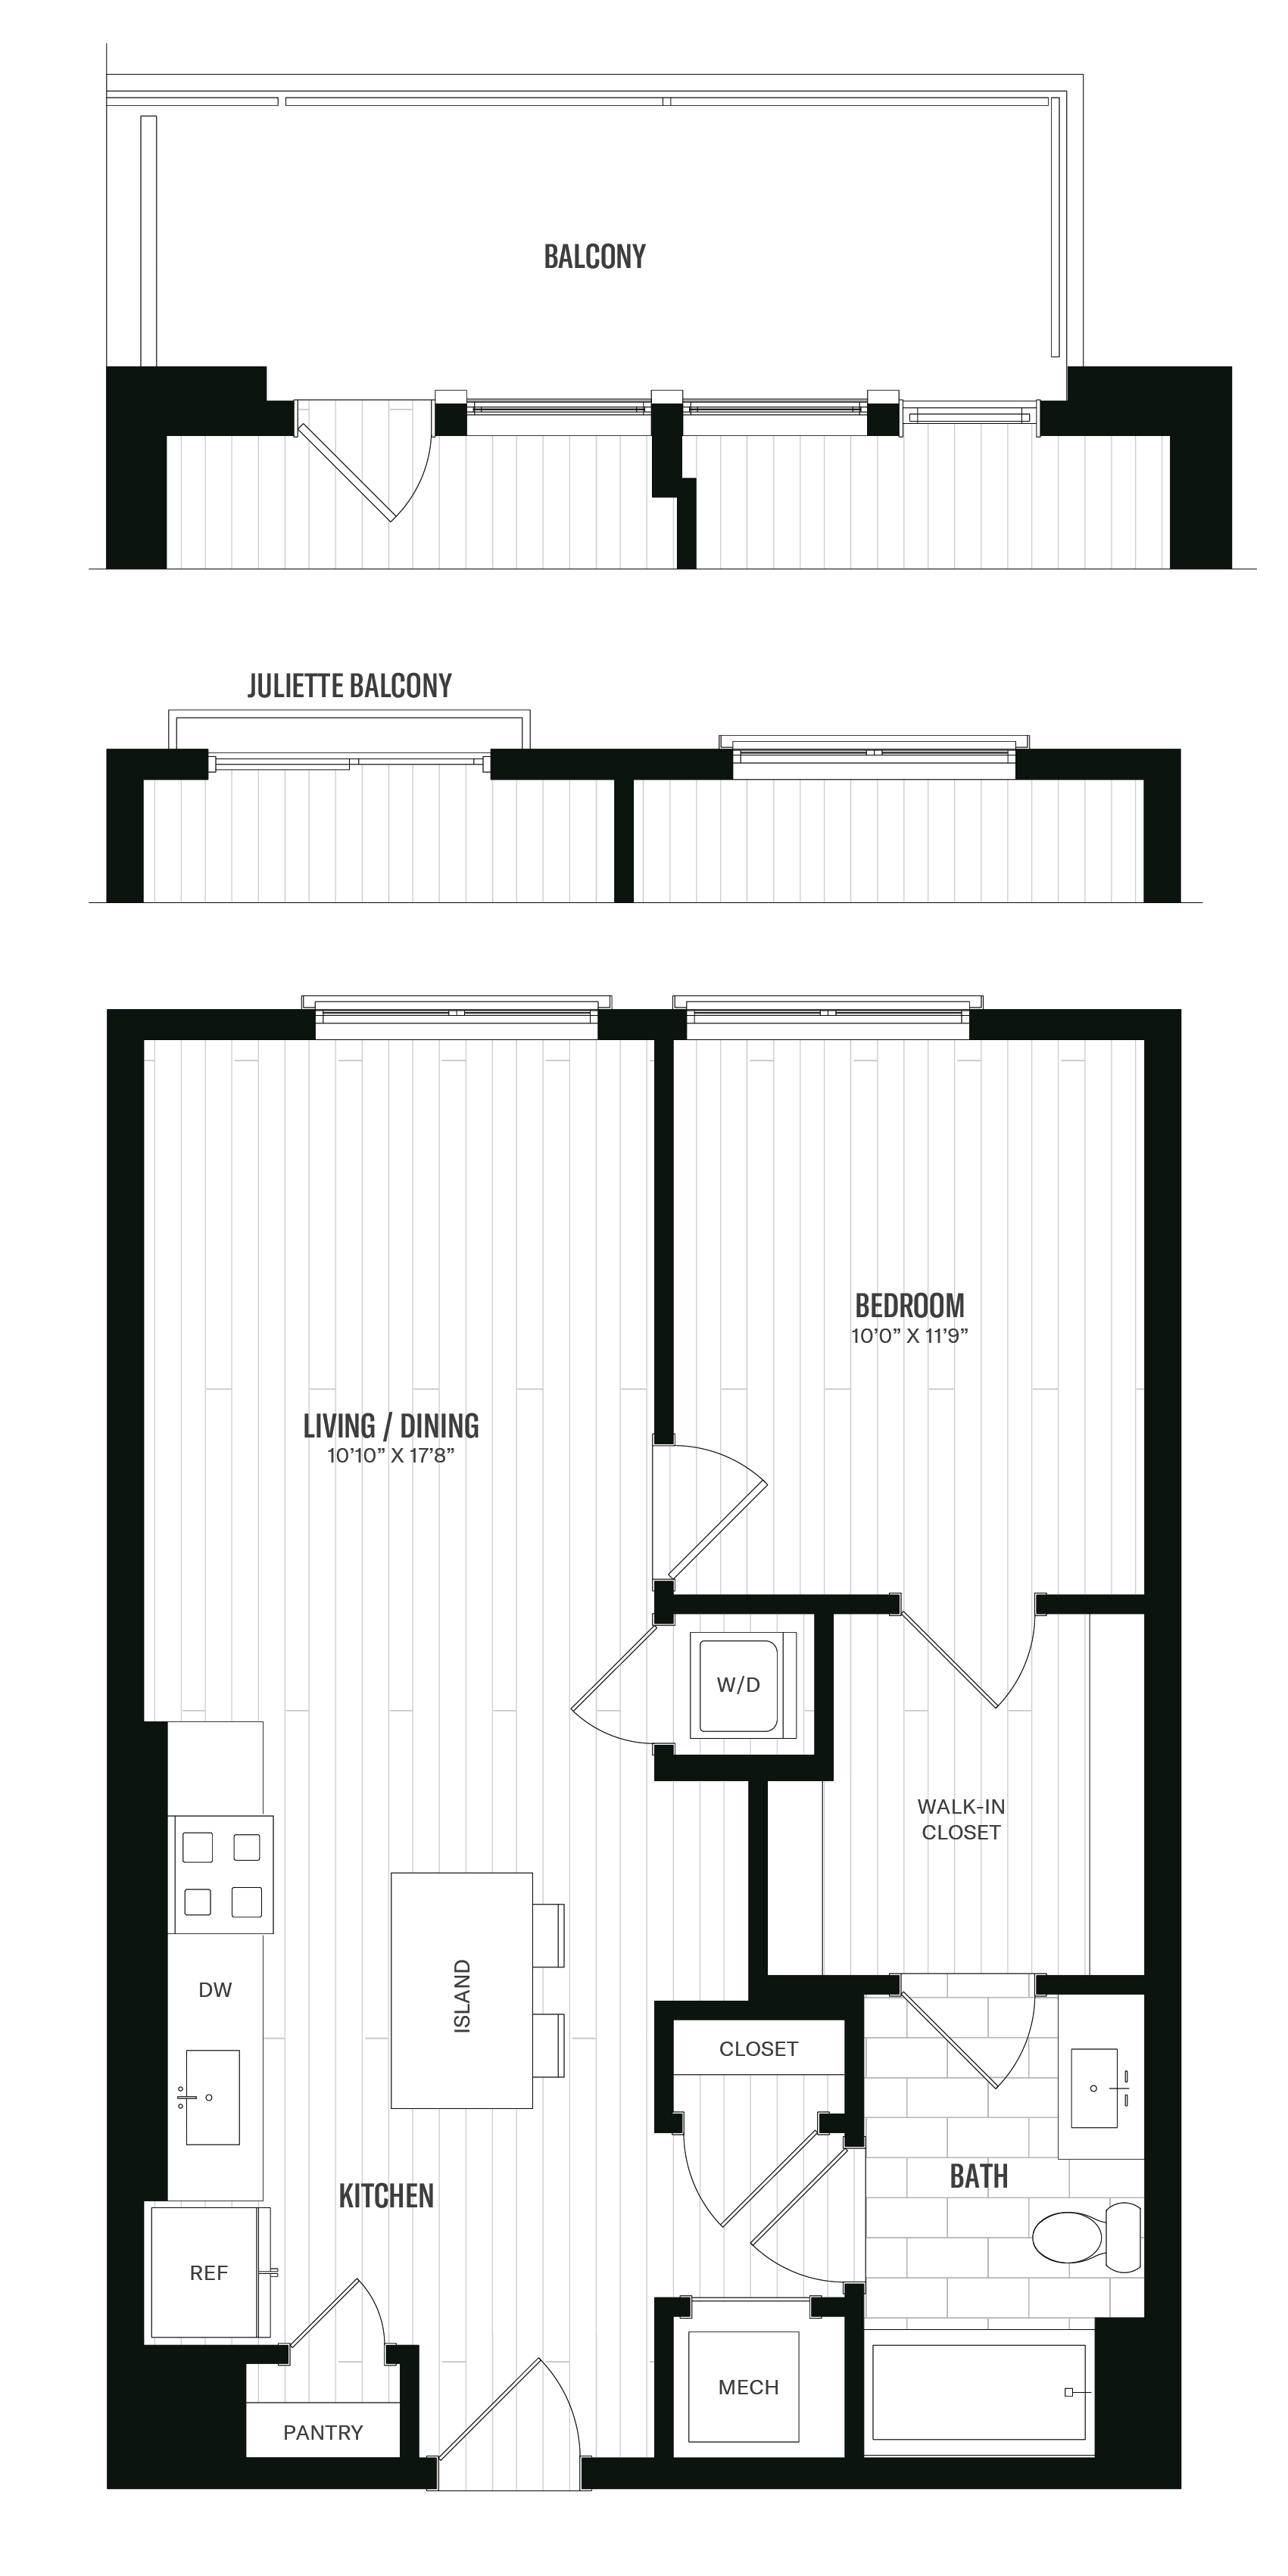 Floorplan image of unit 427